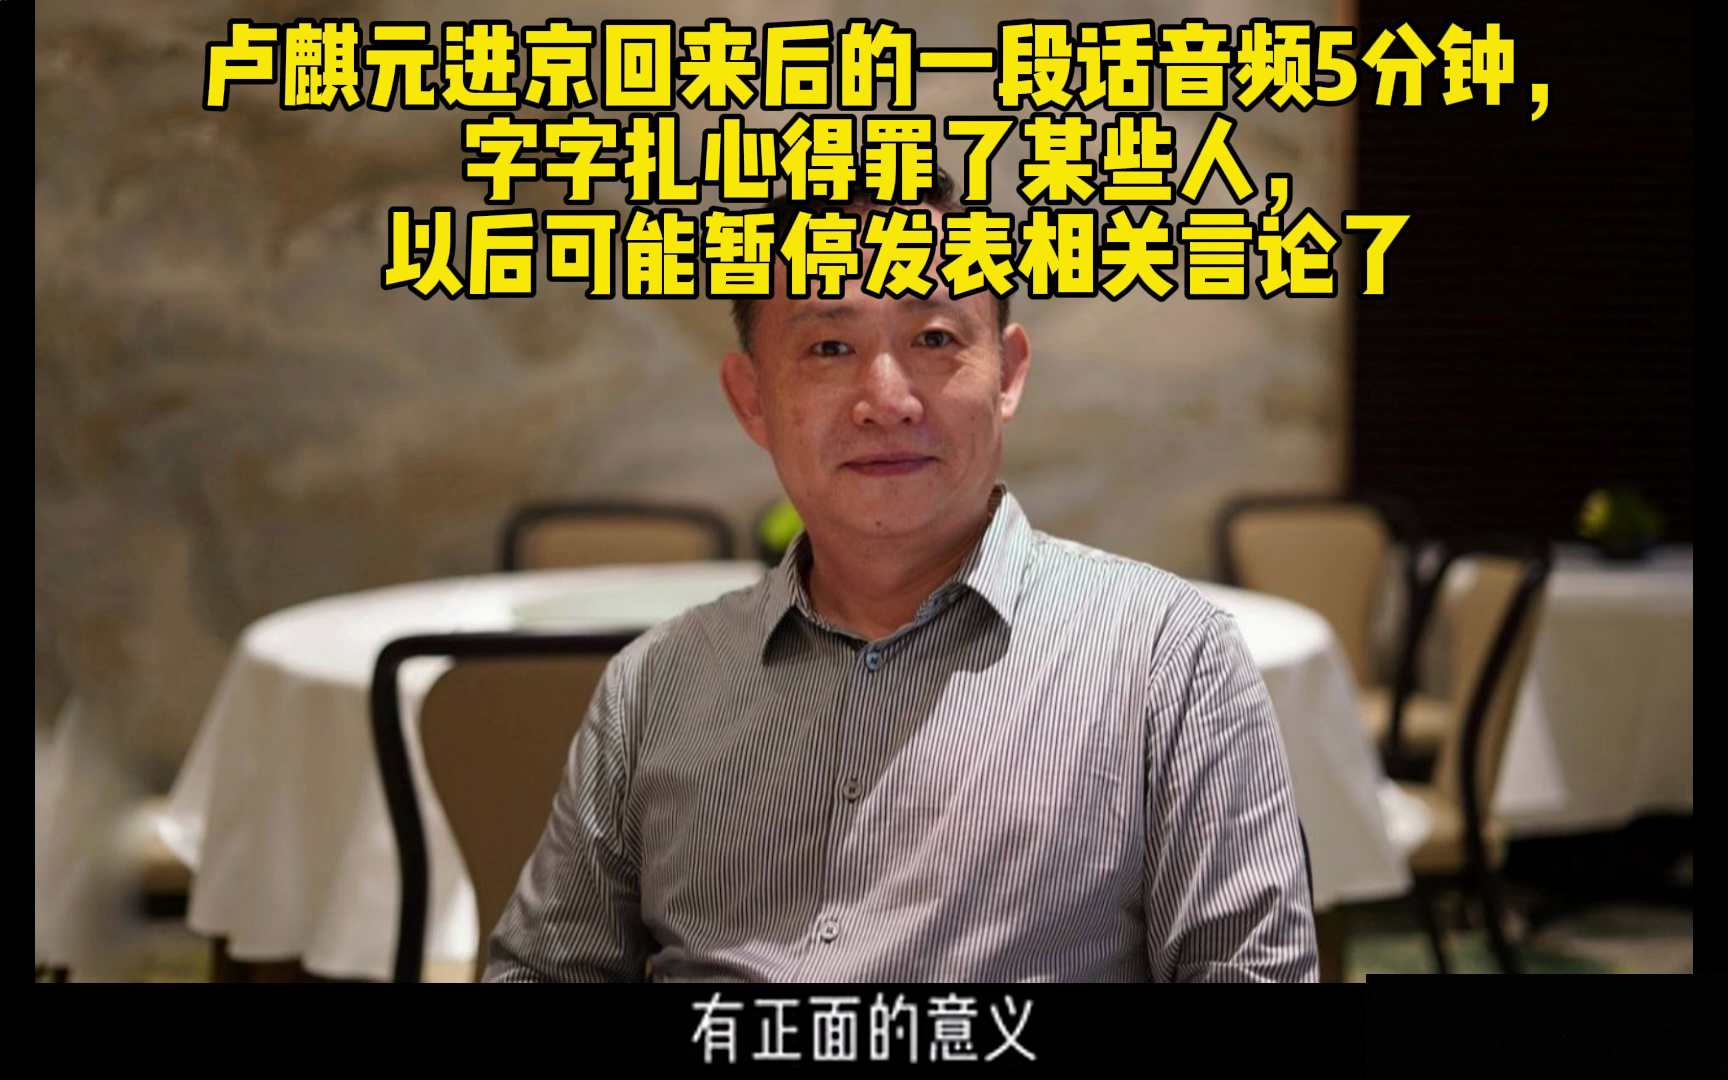 卢麒元进京回来后的一段话音频5分钟，字字扎心得罪了某些人，以后可能暂停发表相关言论了。